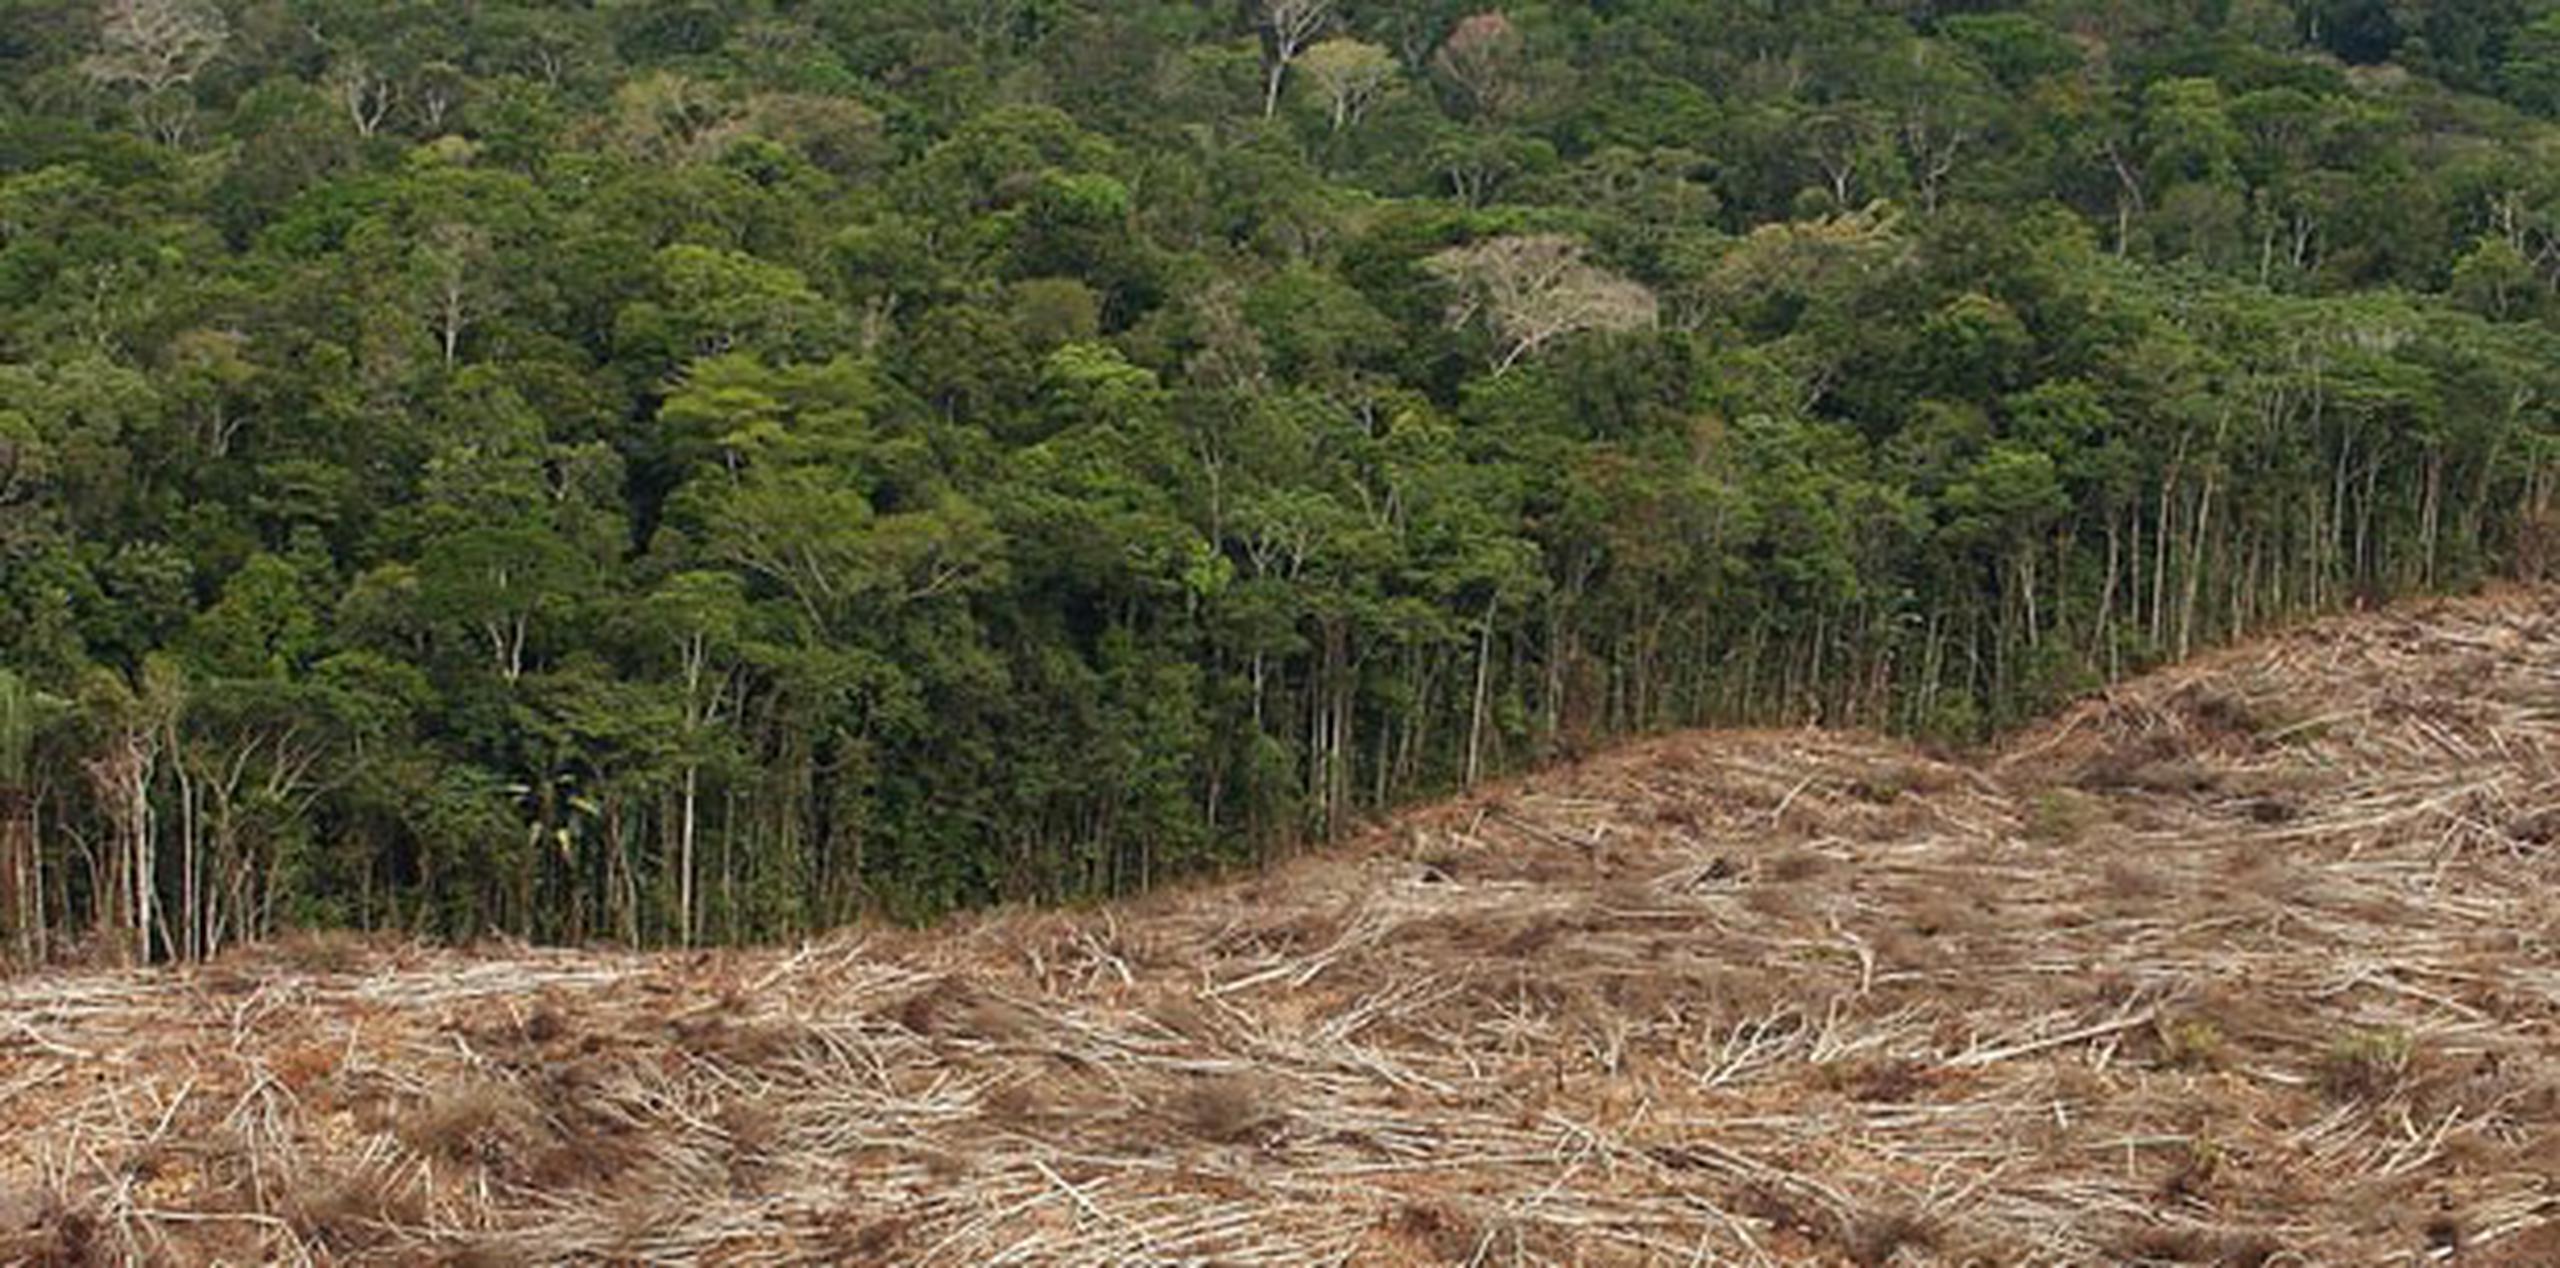 La destrucción de la selva pone en peligro a otras de las especies nativas de la región. (Archivo)